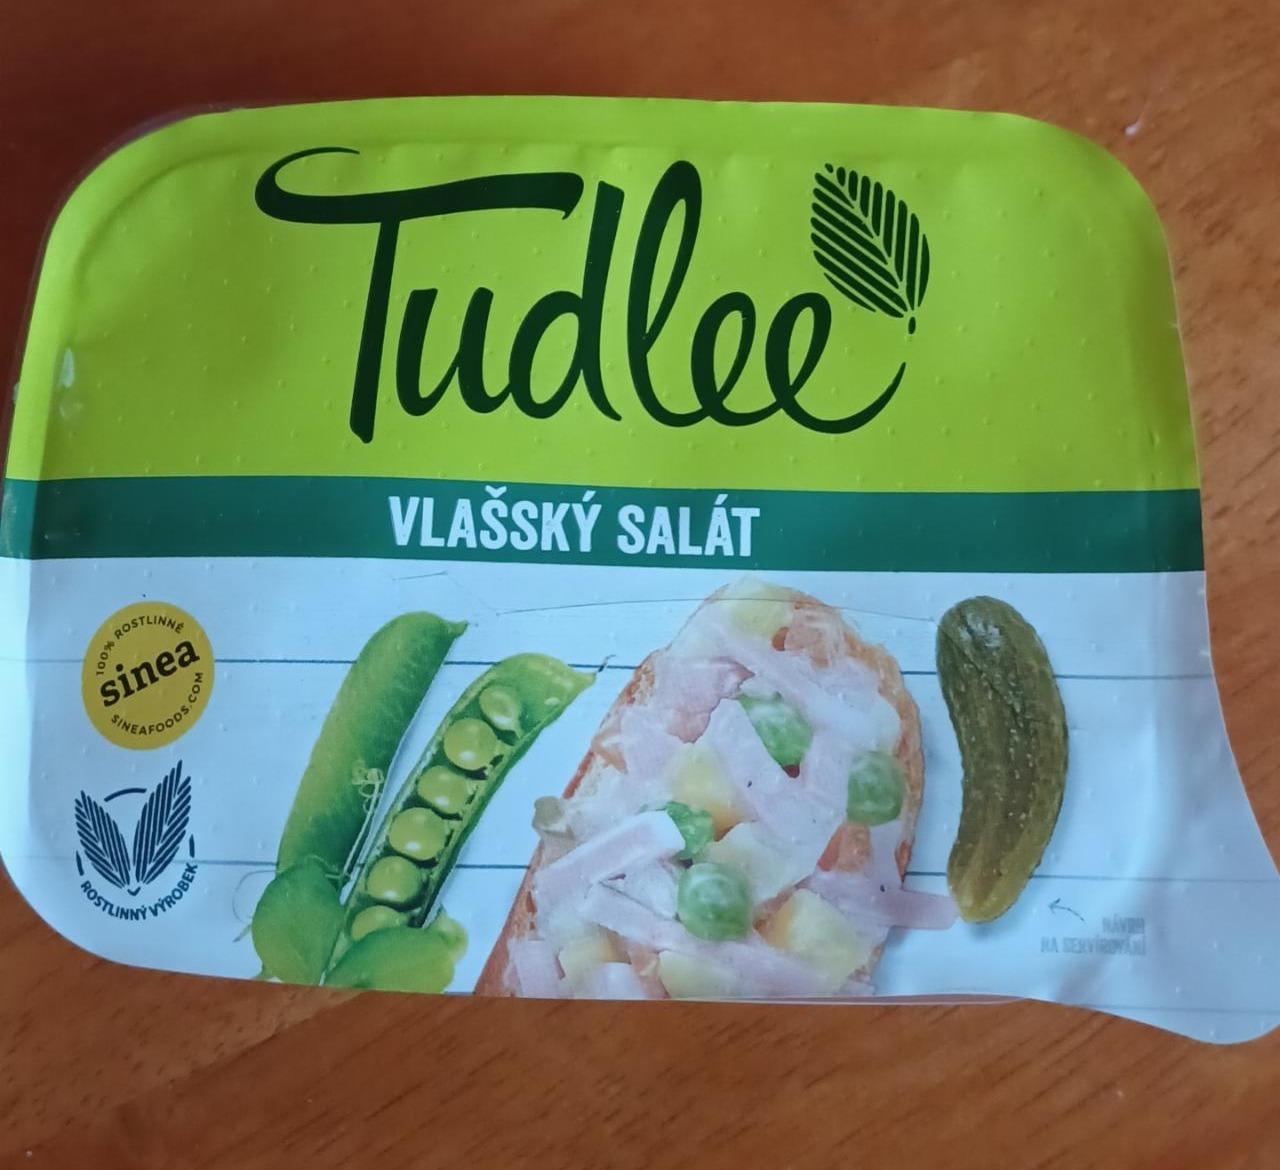 Fotografie - Vlašský salát Tudlee